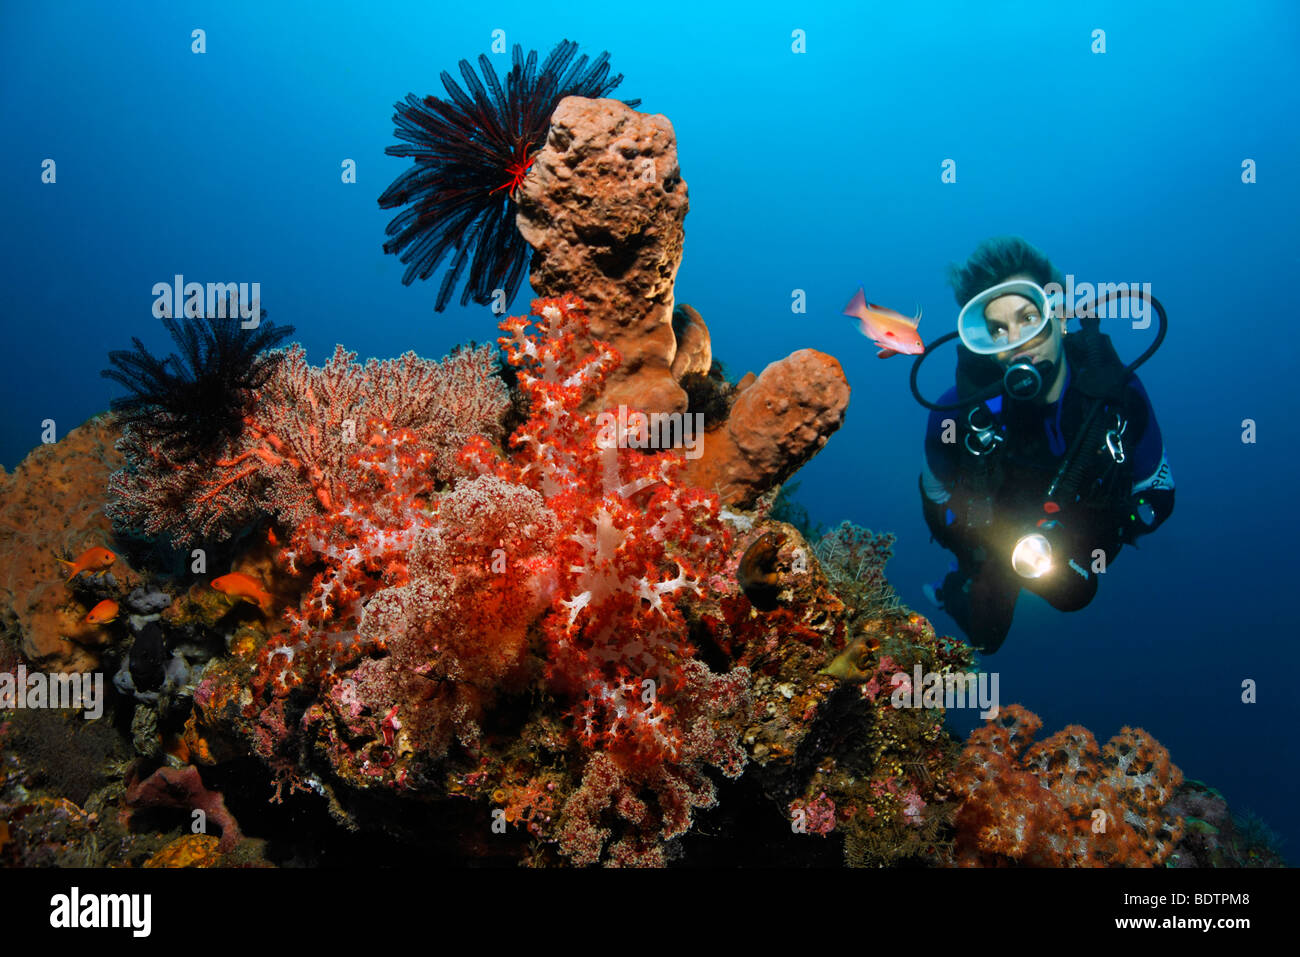 Bloc de corail, plongée sous marine, diverses sortes d'éponges, de coraux, d'étoiles, mini-récif, Sandy Ground, Bali, moindre Sunda Isla Banque D'Images